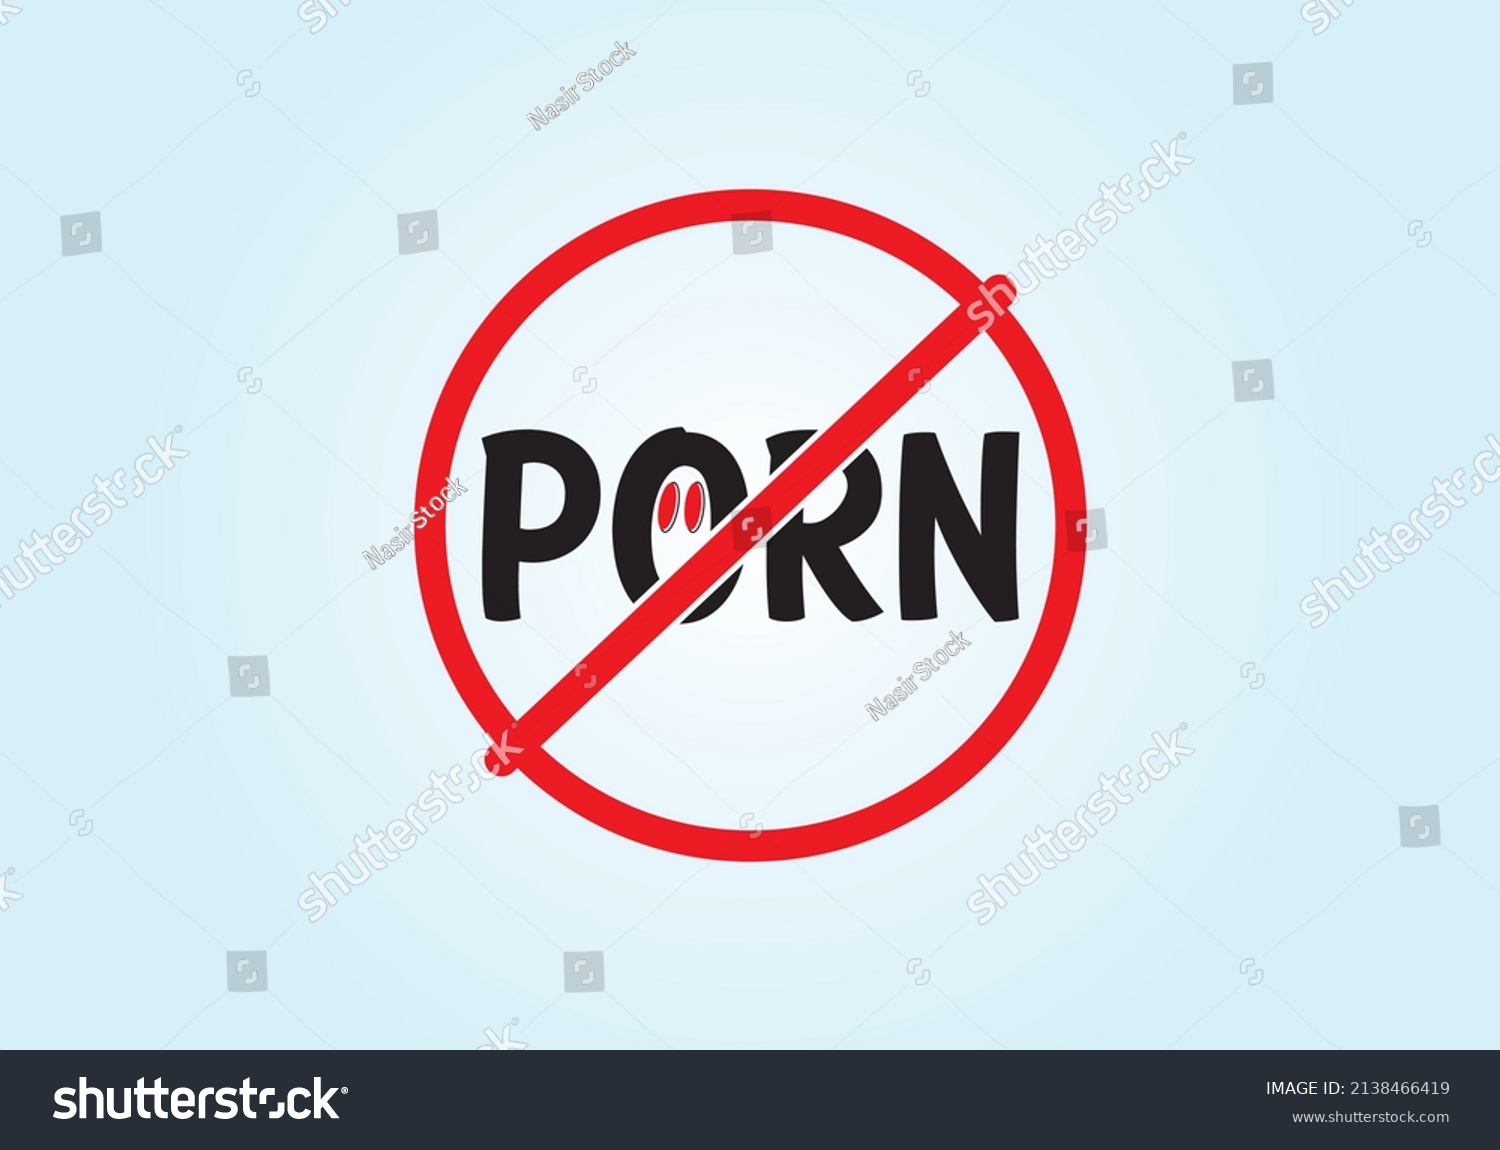 porn is an art com